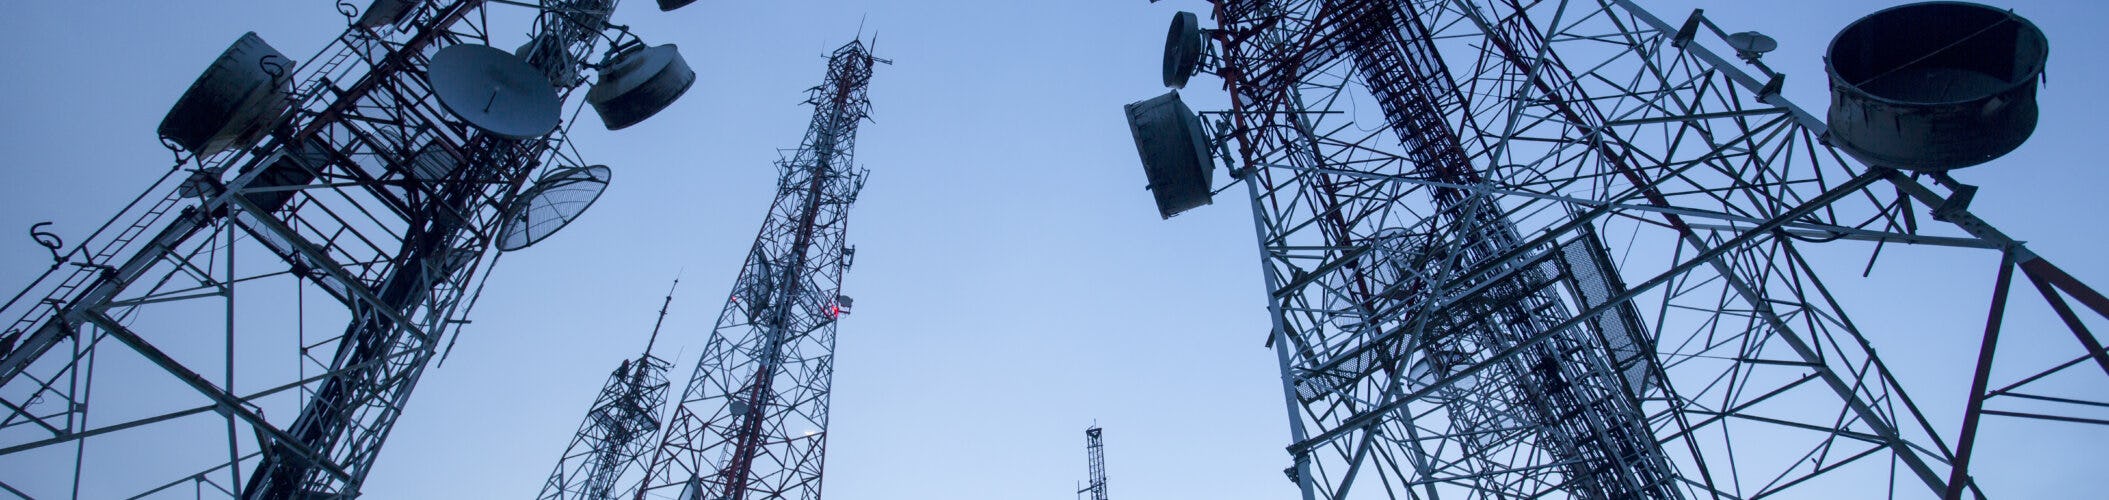 Telecommunication masts